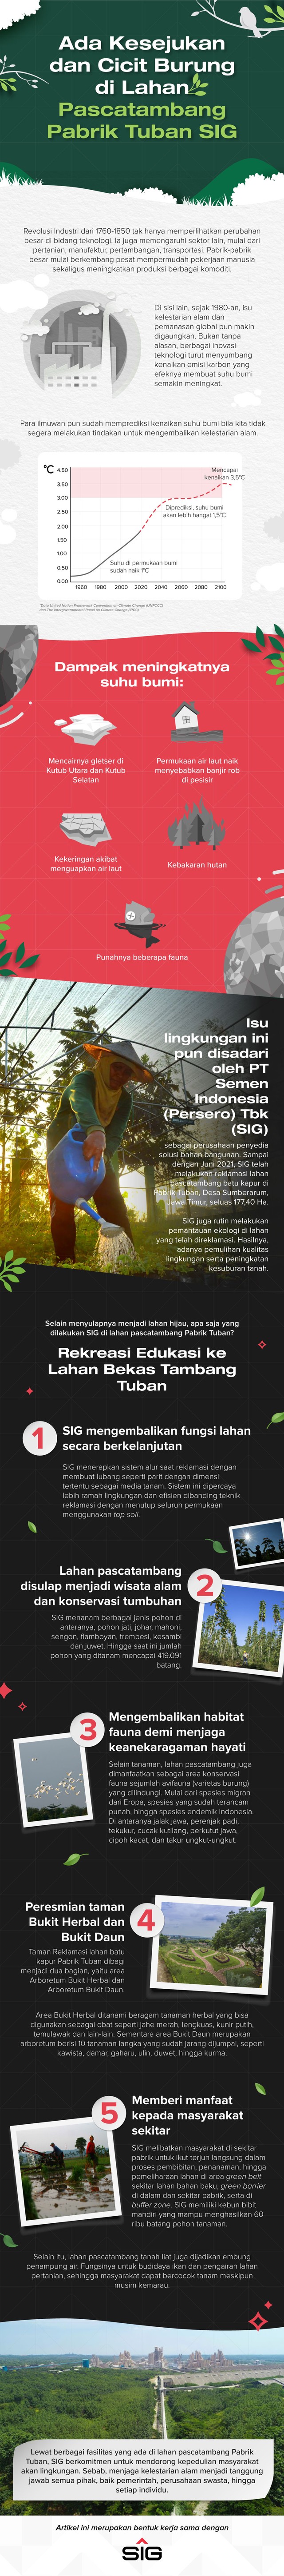 Reklamasi lahan pascatambang batu kapur di Pabrik Tuban, Desa Sumberarum, Jawa Timur, seluas 177,40 Ha. Foto: kumparan/Anisti Fakhirah